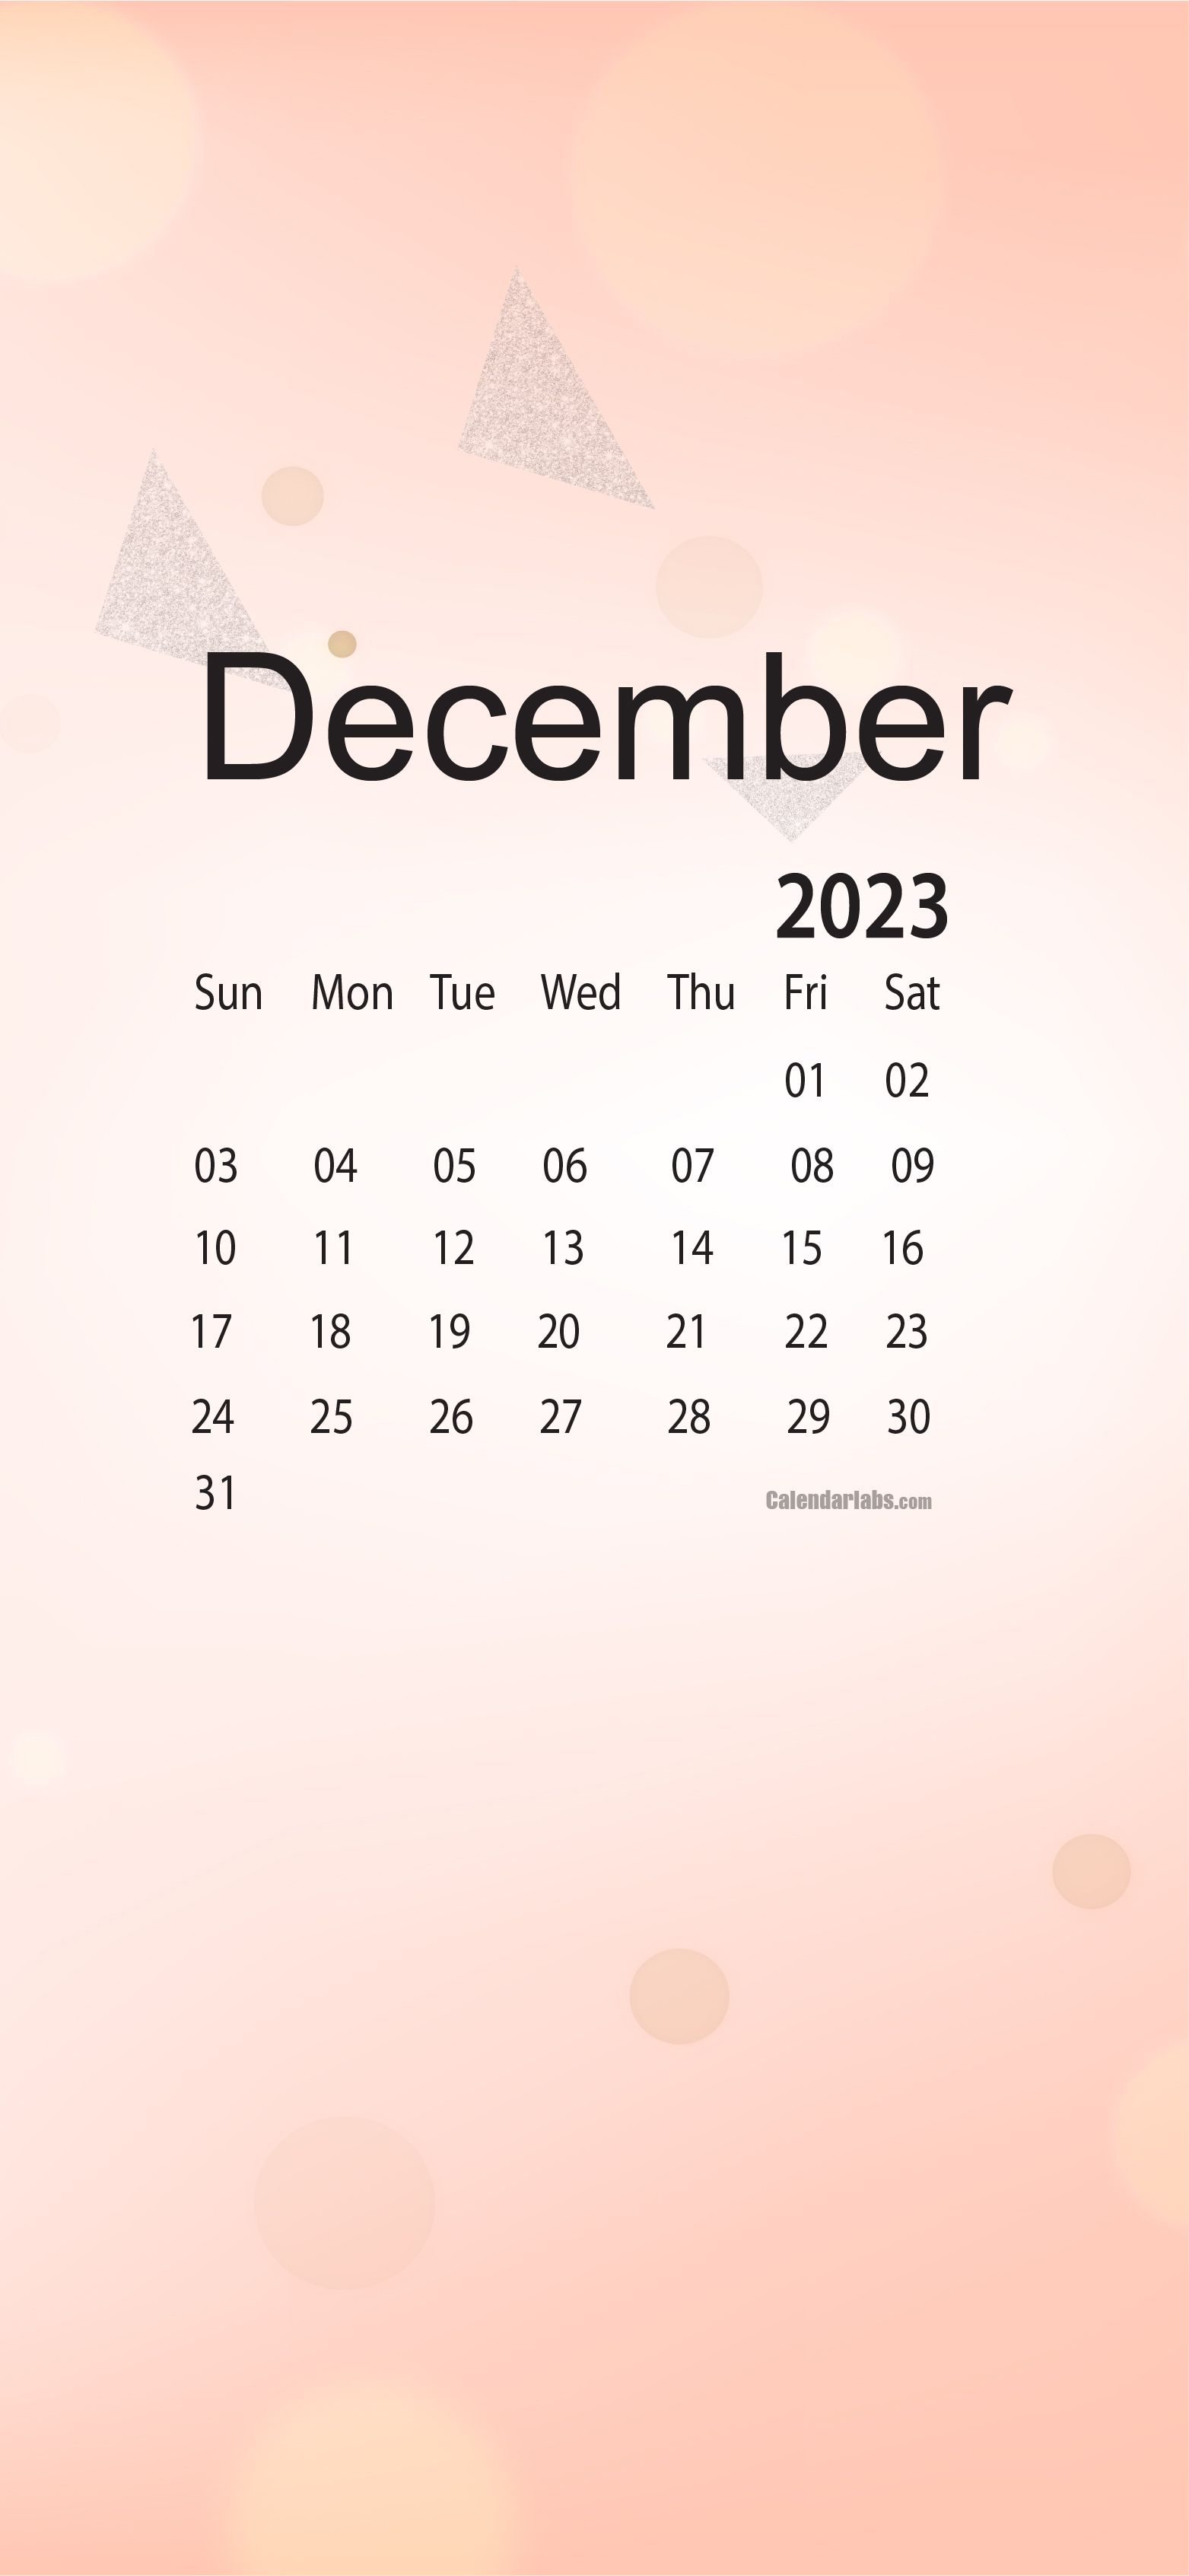  2023 Kalender Hintergrundbild 1563x3385. December 2023 Desktop Wallpaper Calendar